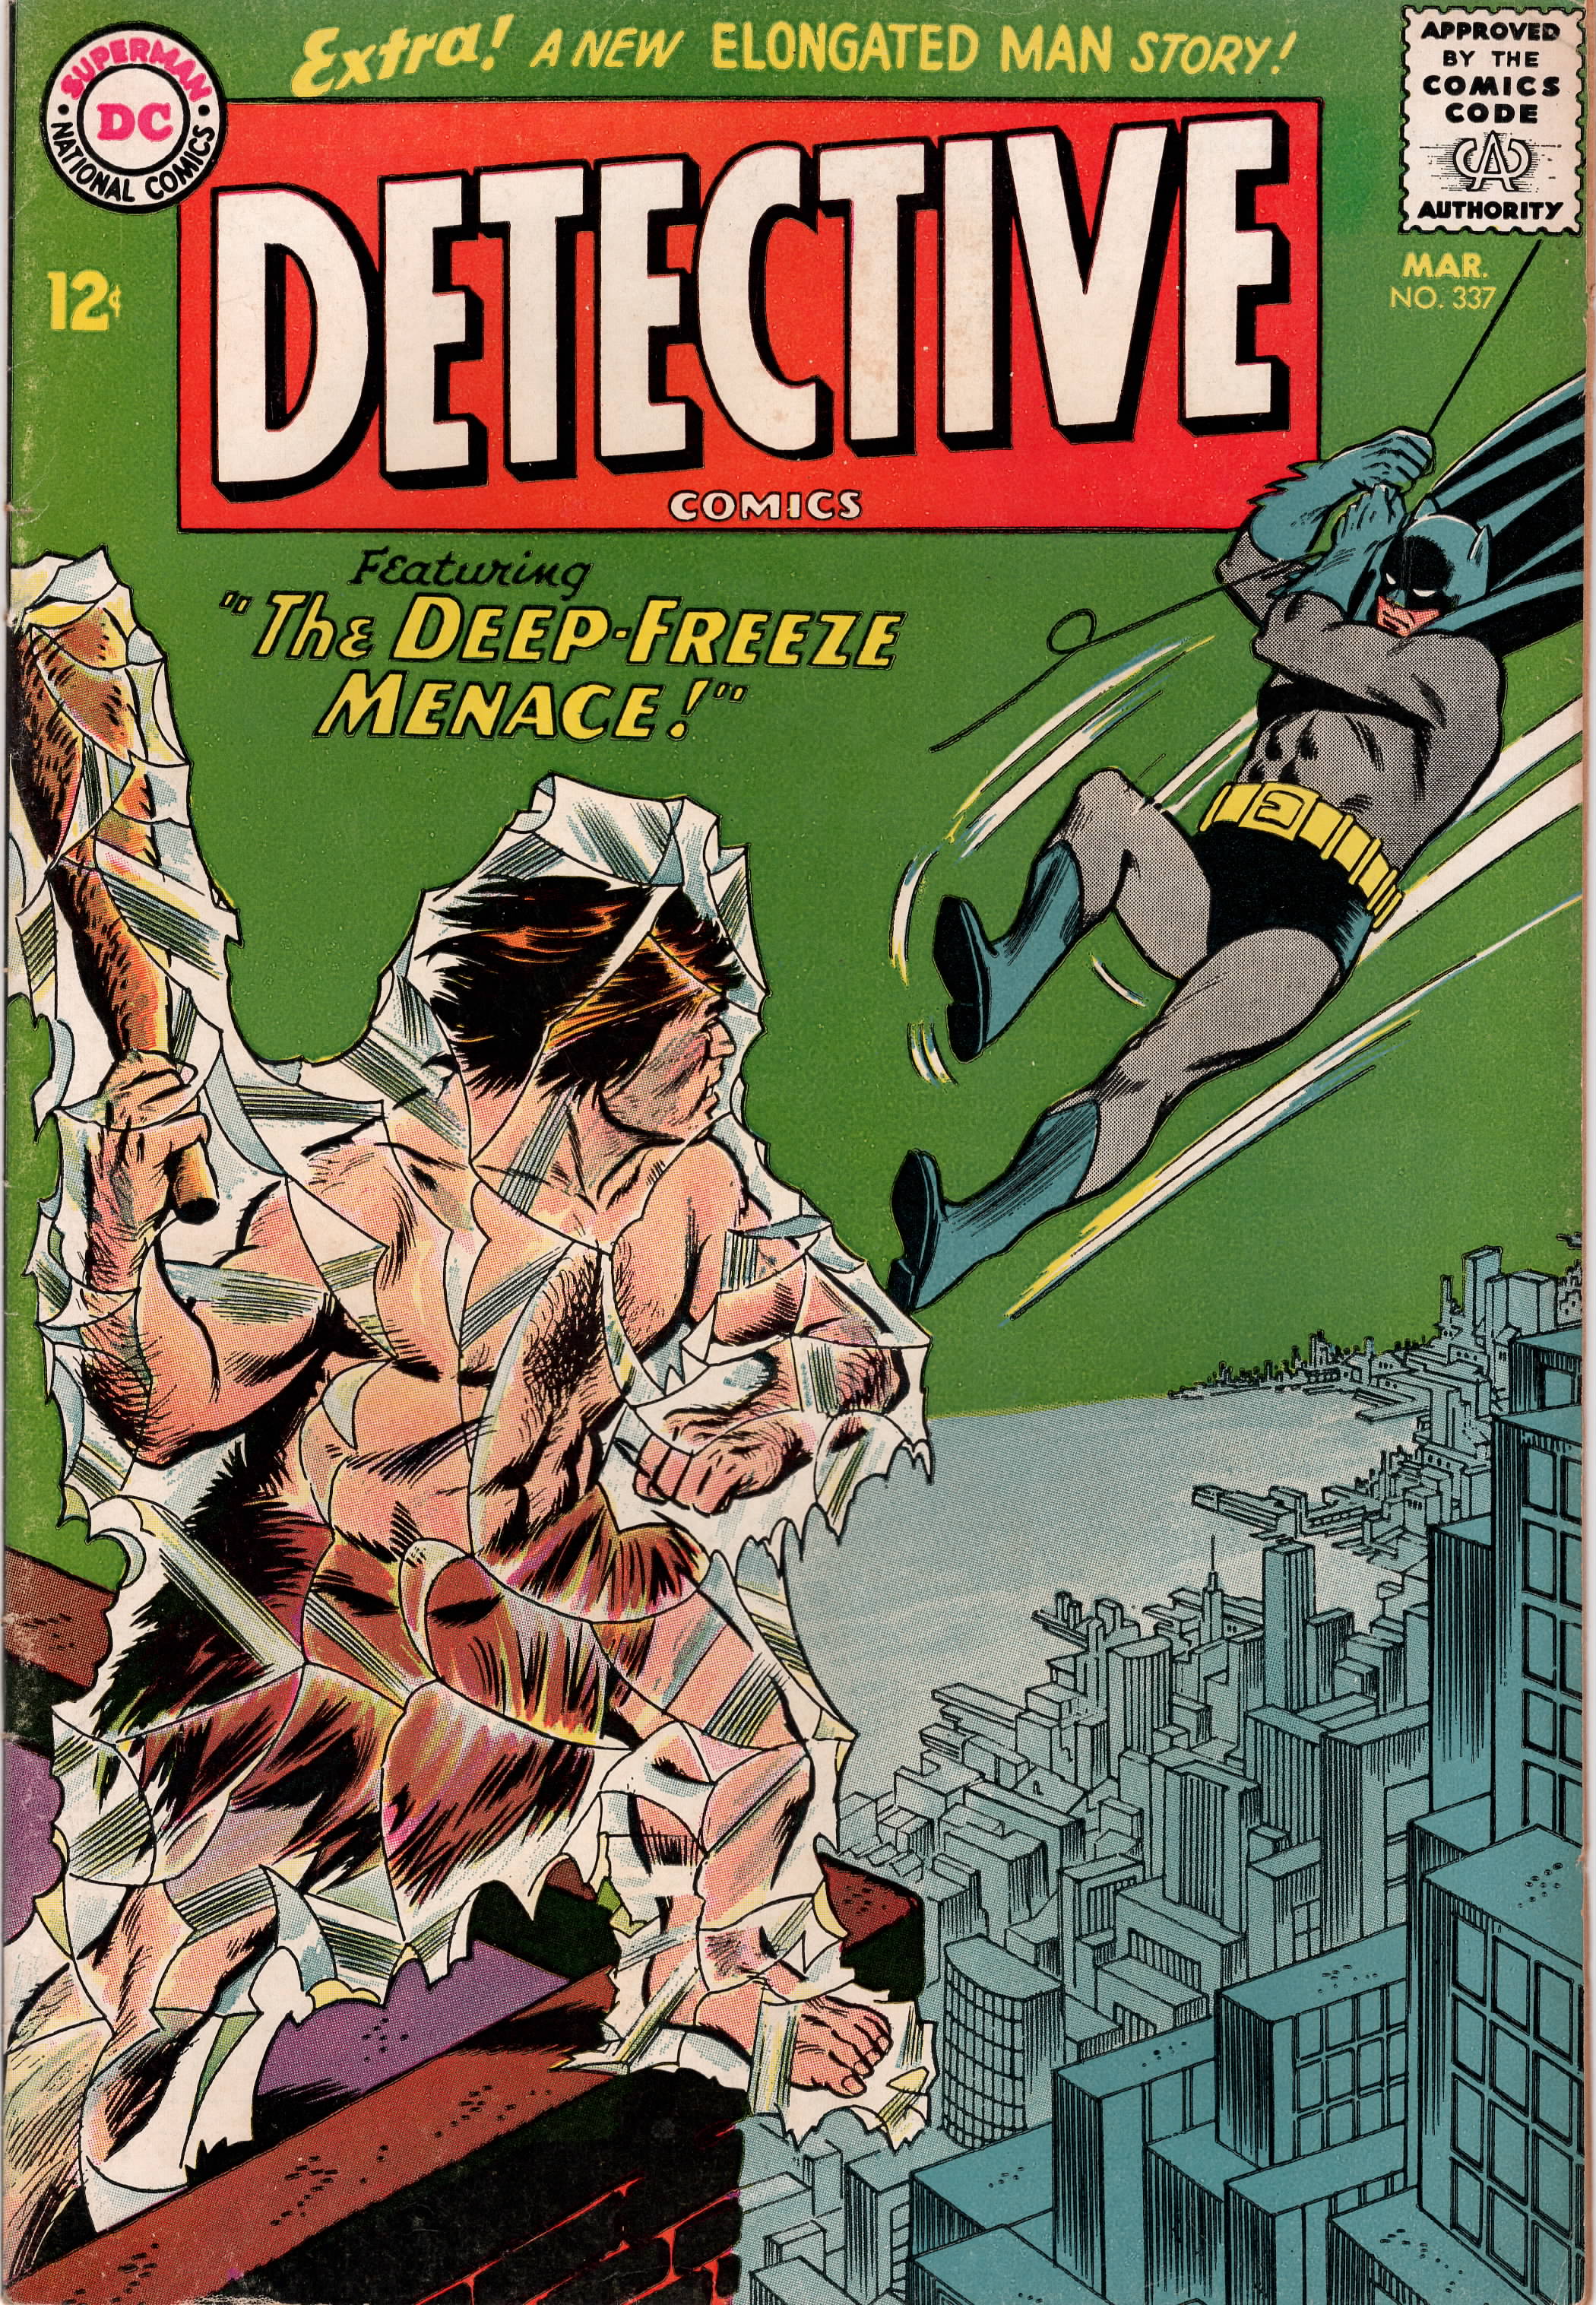 Detective Comics #0337